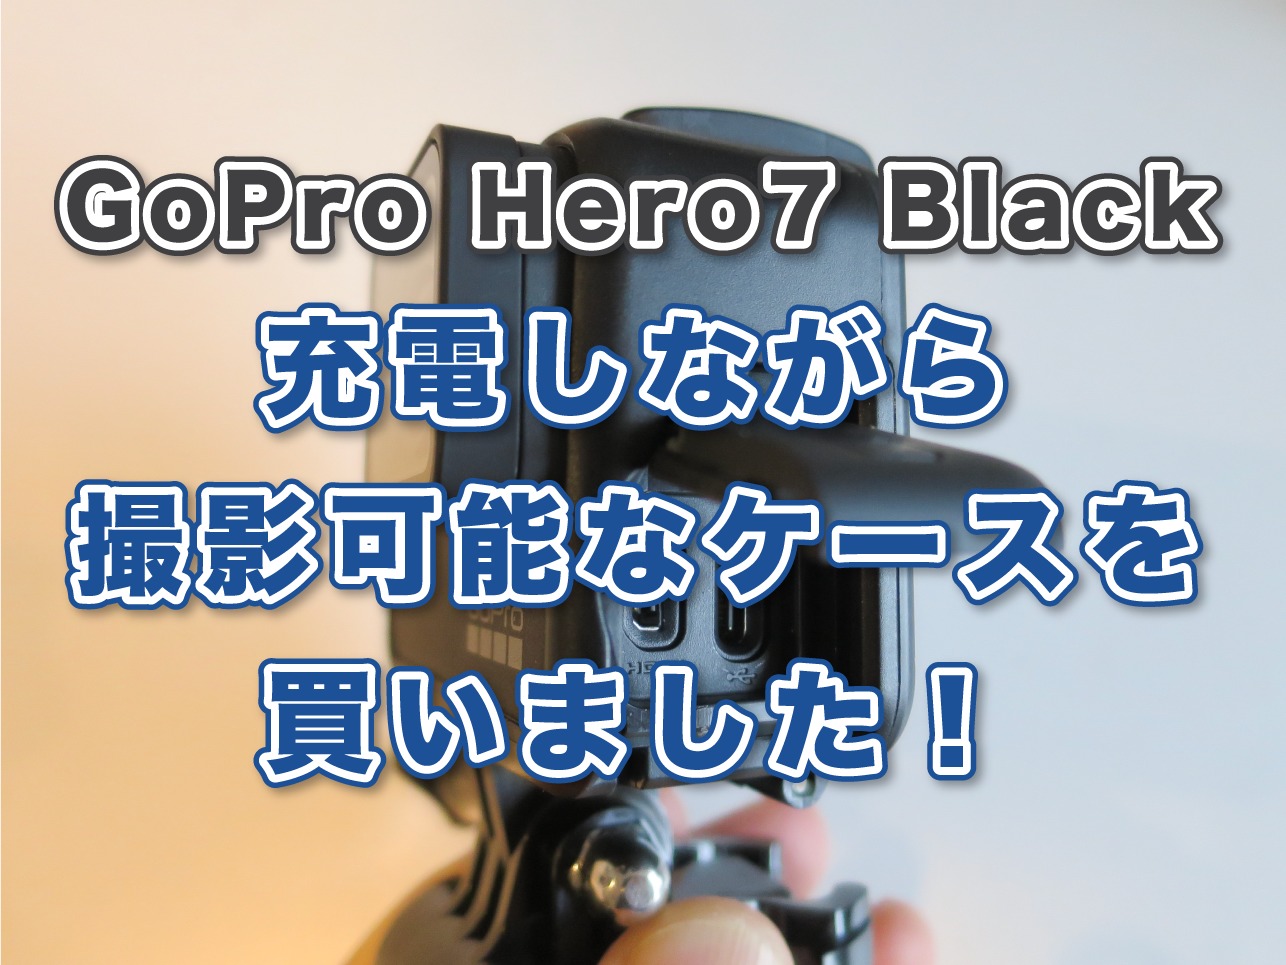 GoPro HERO7 Blackの純正のケース（保護フレーム）を、充電しながら撮影可能のTaisioner製「THE FRAME」ケースに変えたのでレビューします！